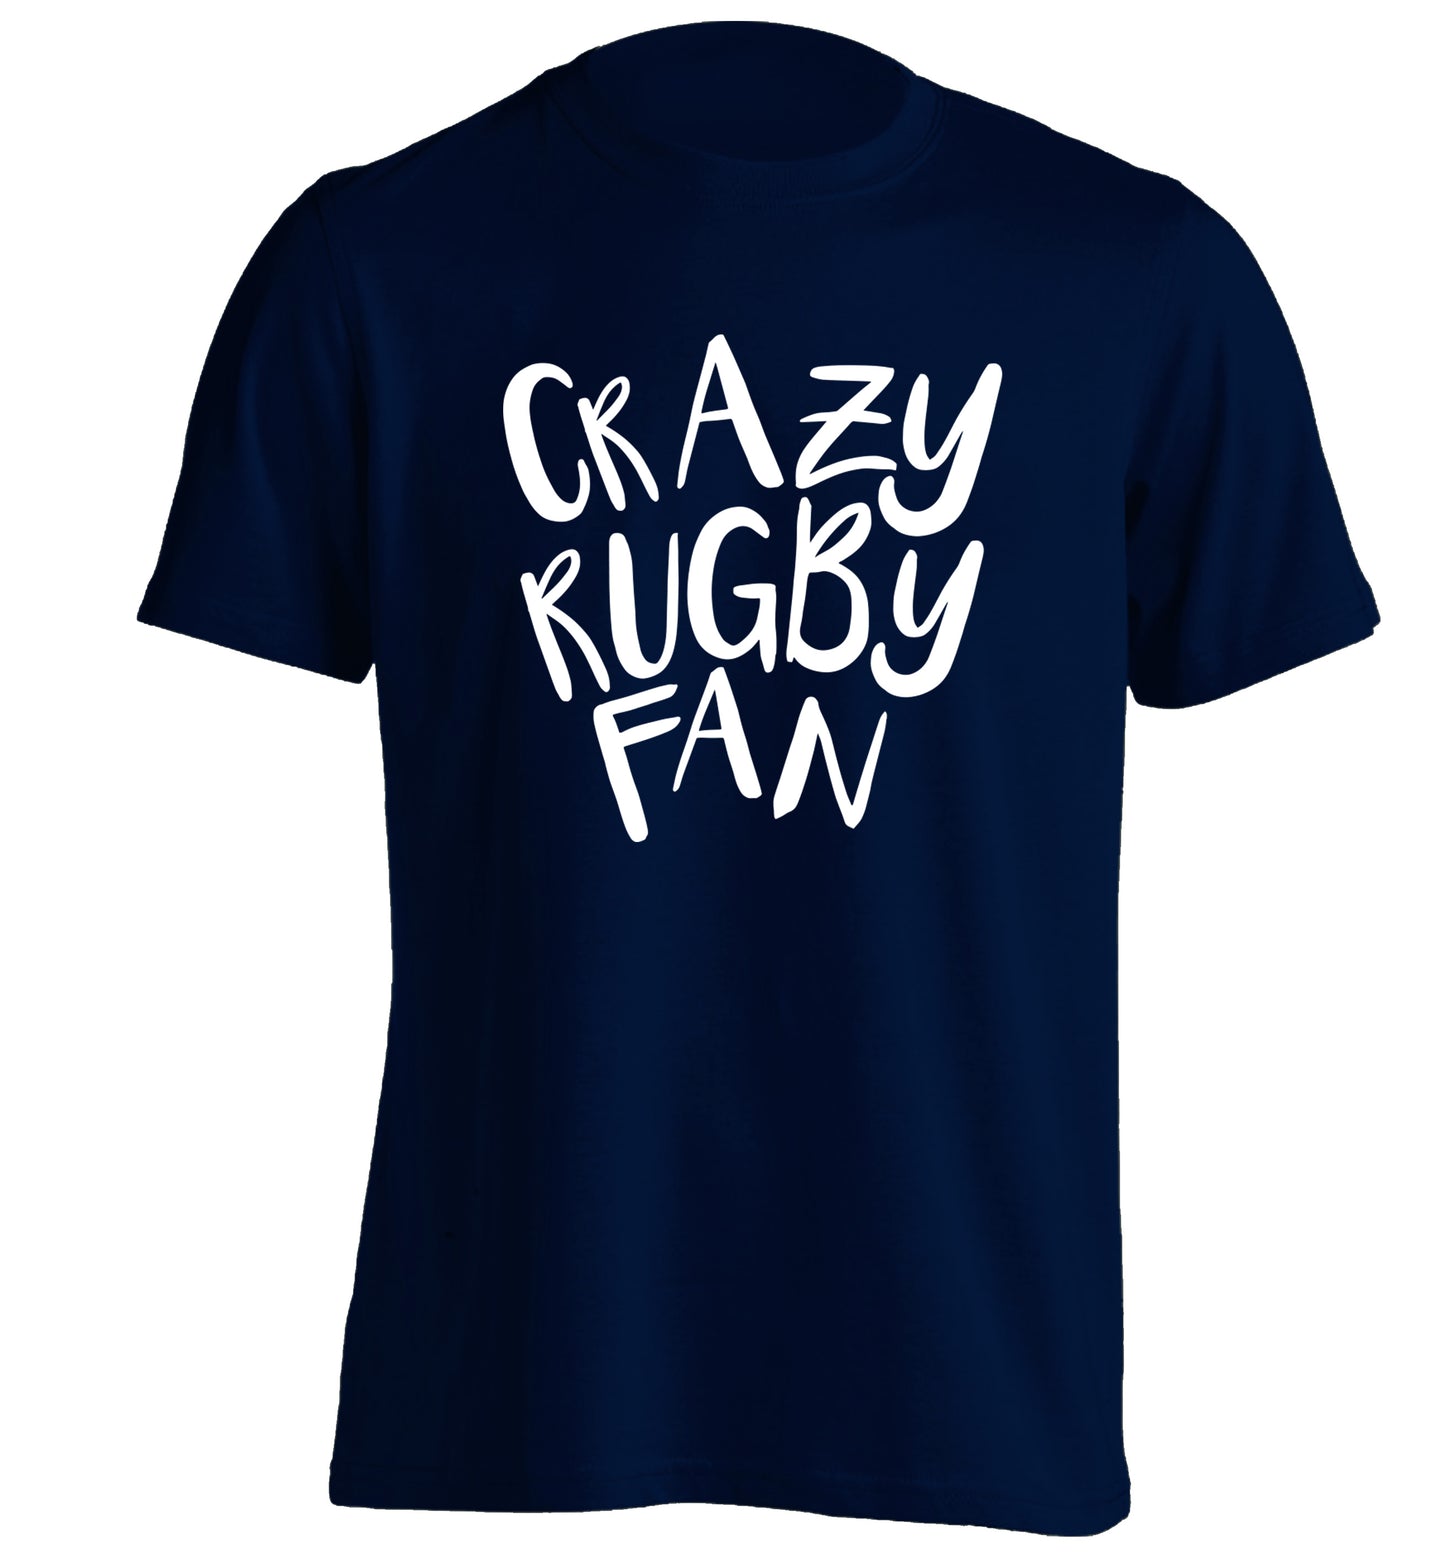 Crazy rugby fan adults unisex navy Tshirt 2XL